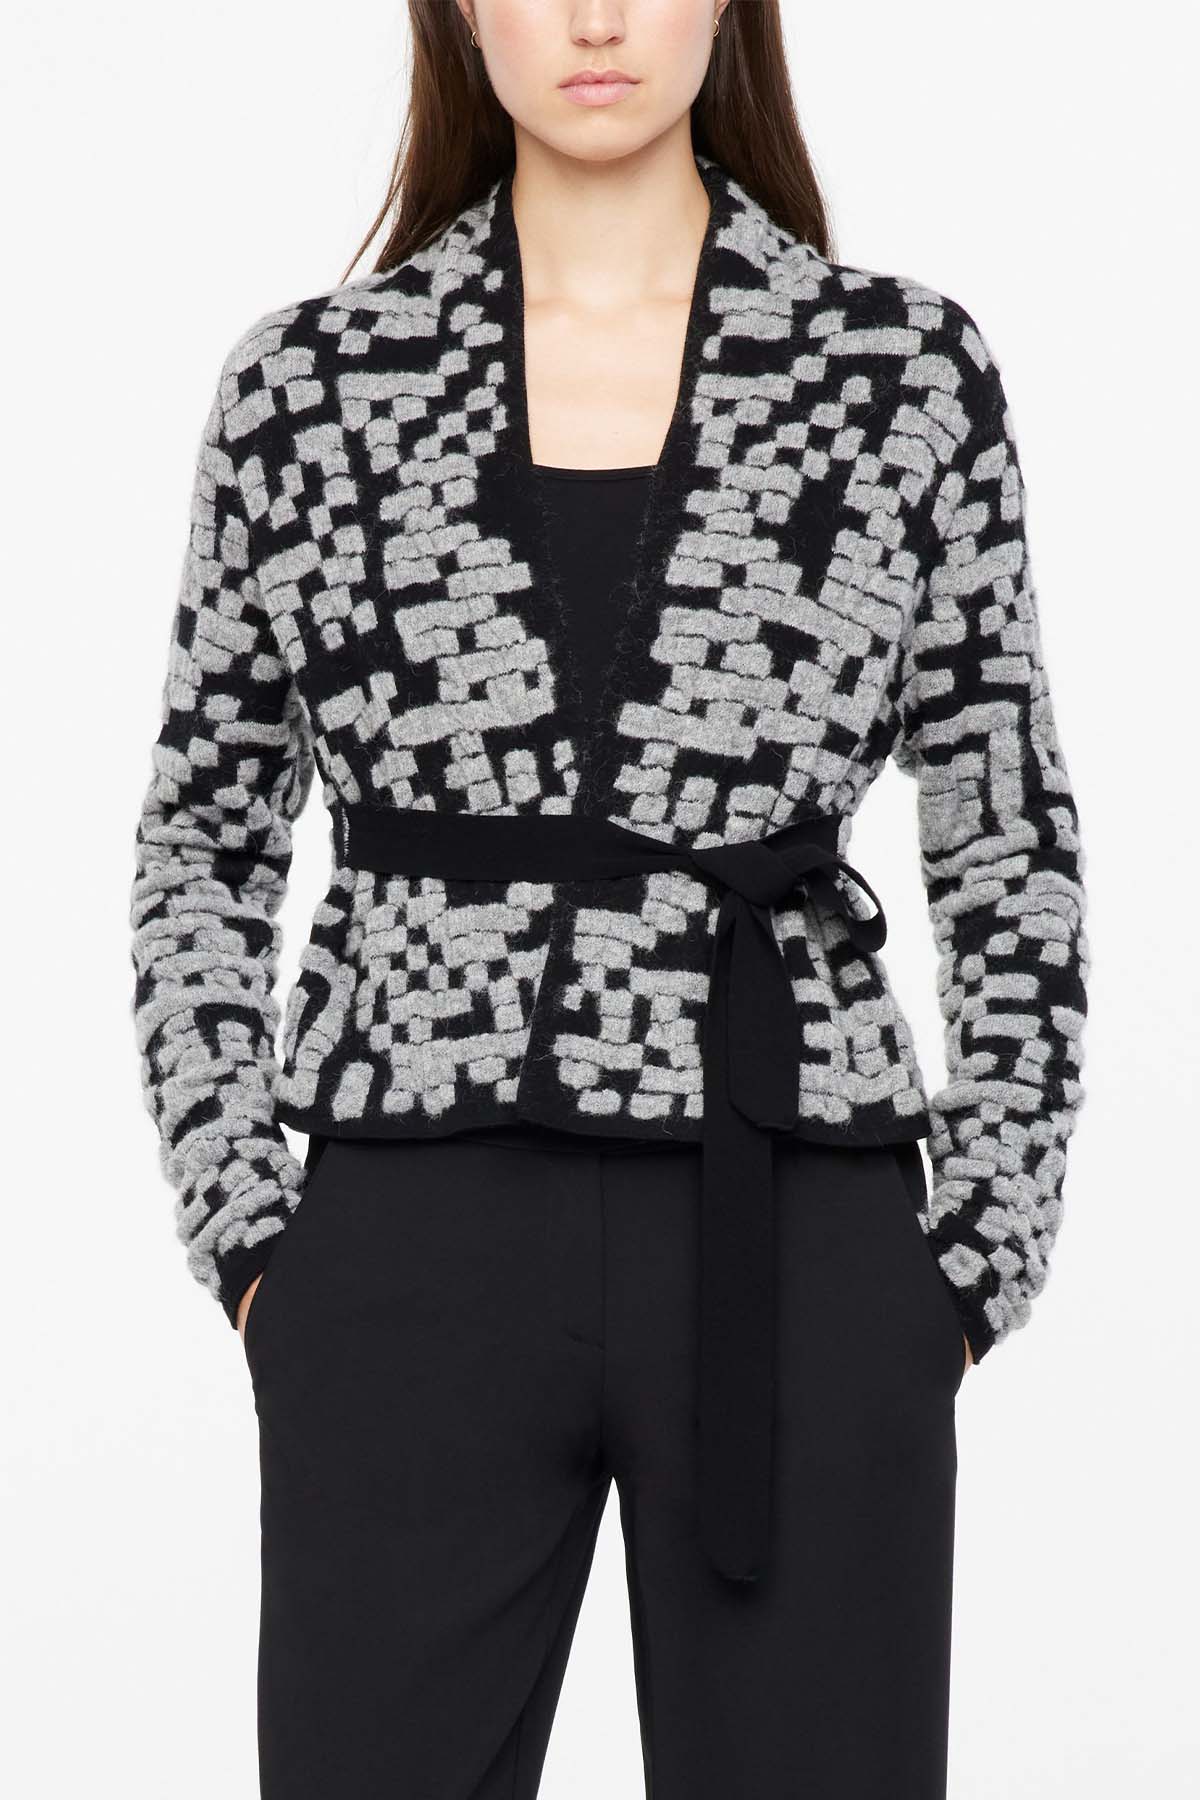 Sarah Pacini Belden Kuşaklı Yün Triko Ceket-Libas Trendy Fashion Store